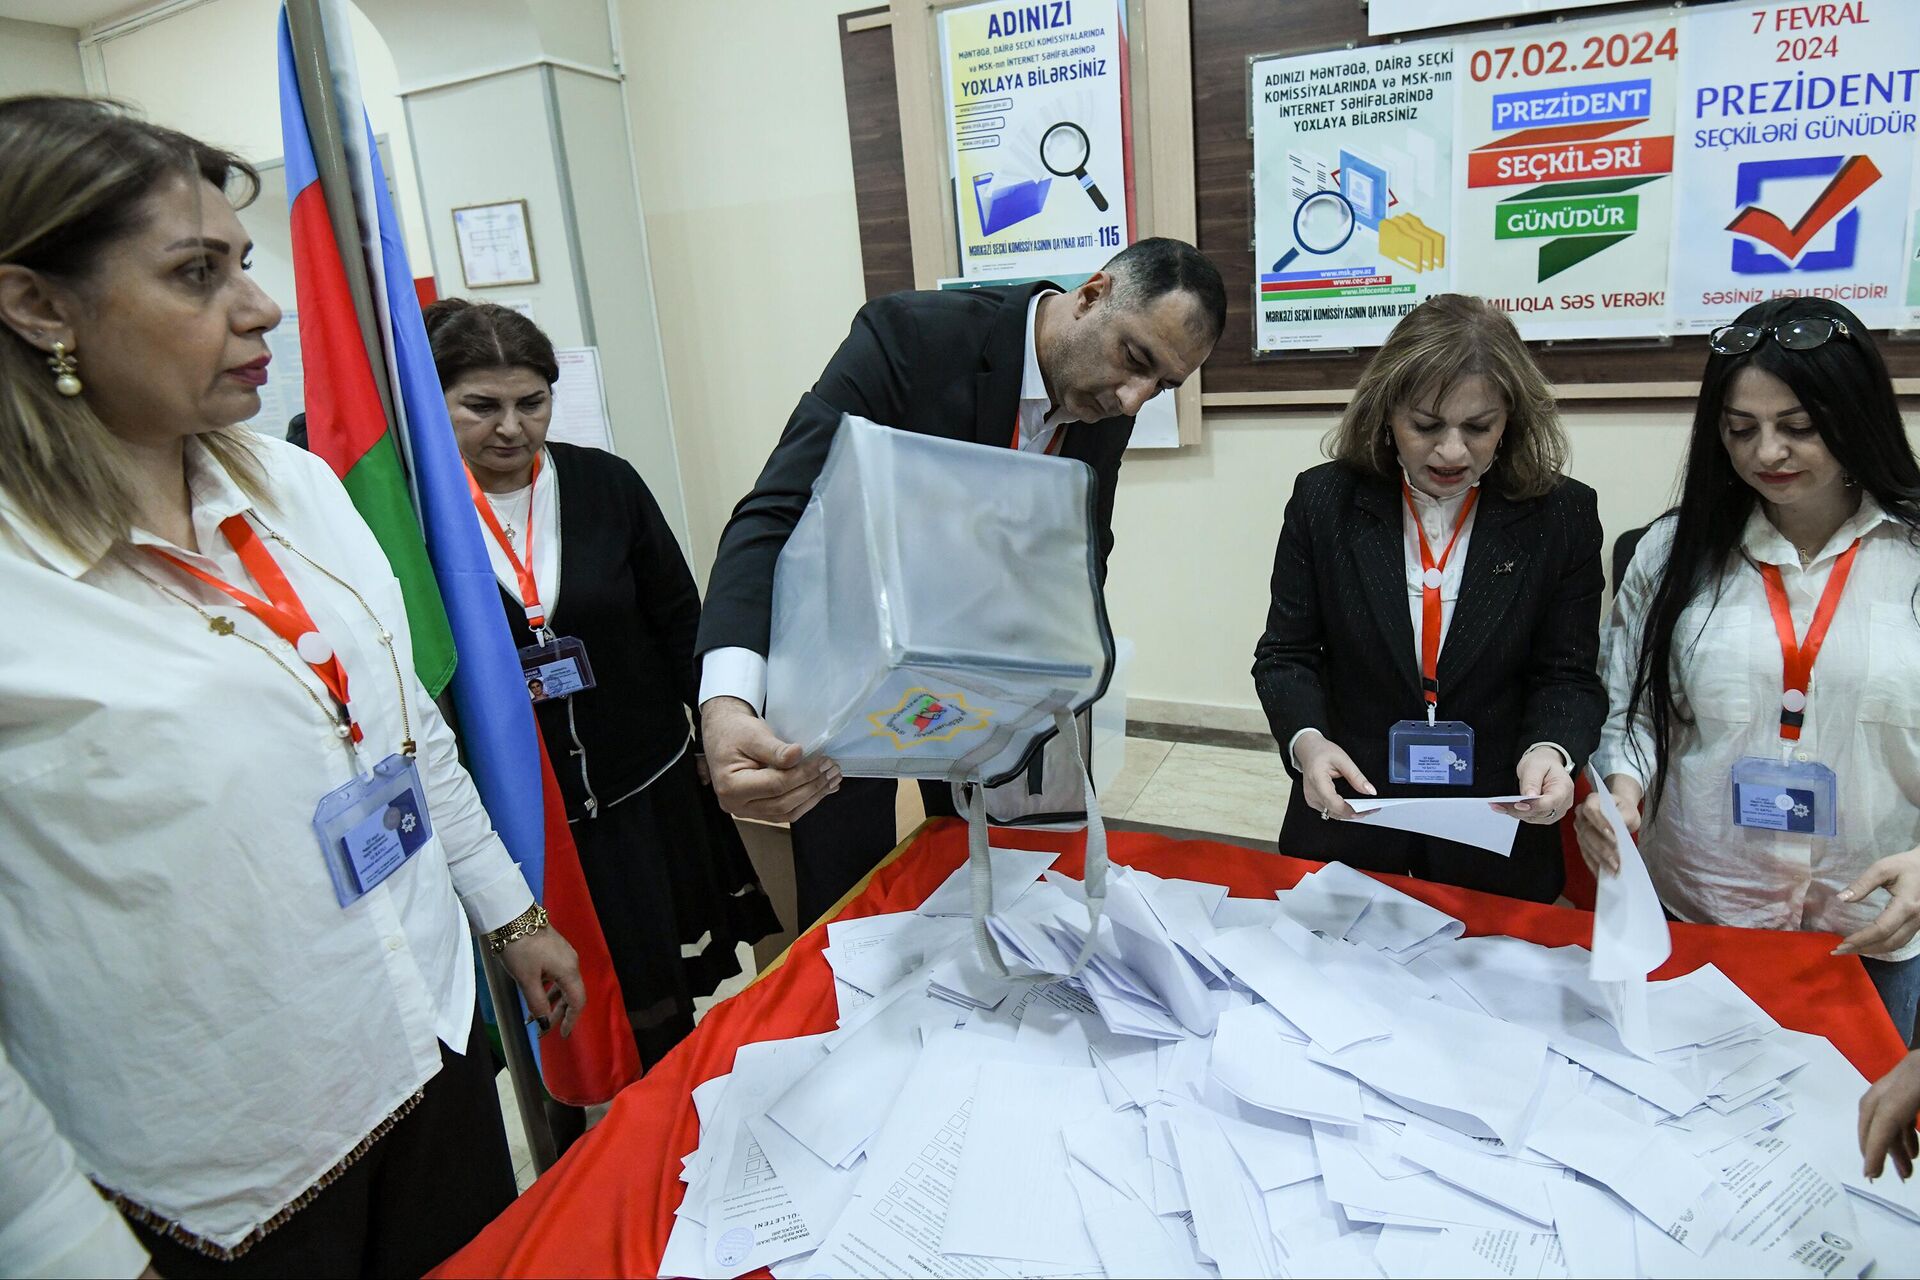 Подсчет голосов на выборах президента Азербайджана - Sputnik Азербайджан, 1920, 08.02.2024